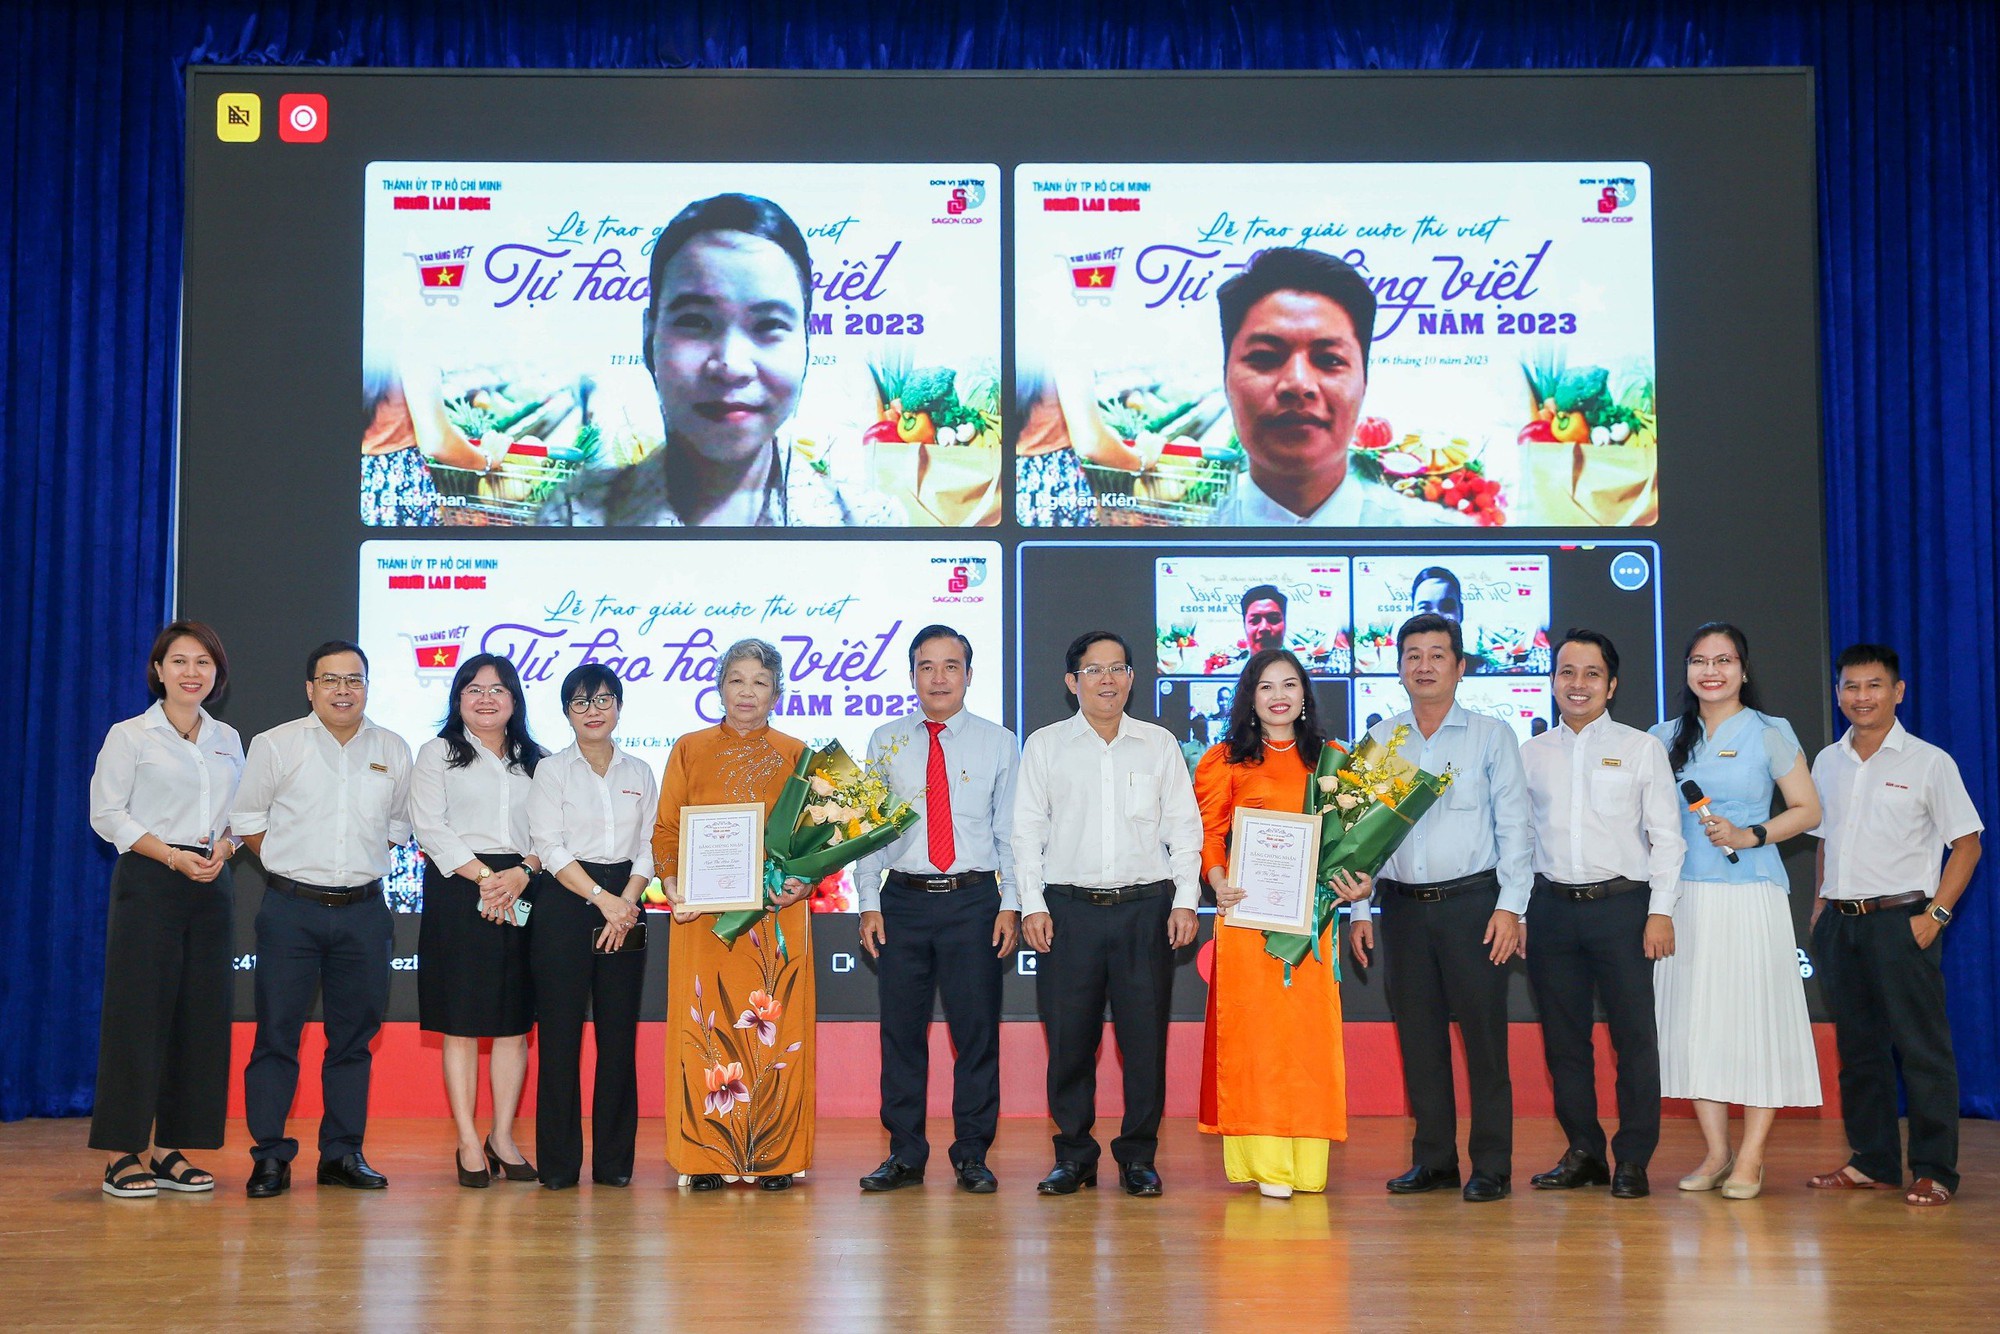 Nhớ lần dìu ngoại đi siêu thị đoạt giải nhất cuộc thi “Tự hào hàng Việt” - Ảnh 6.